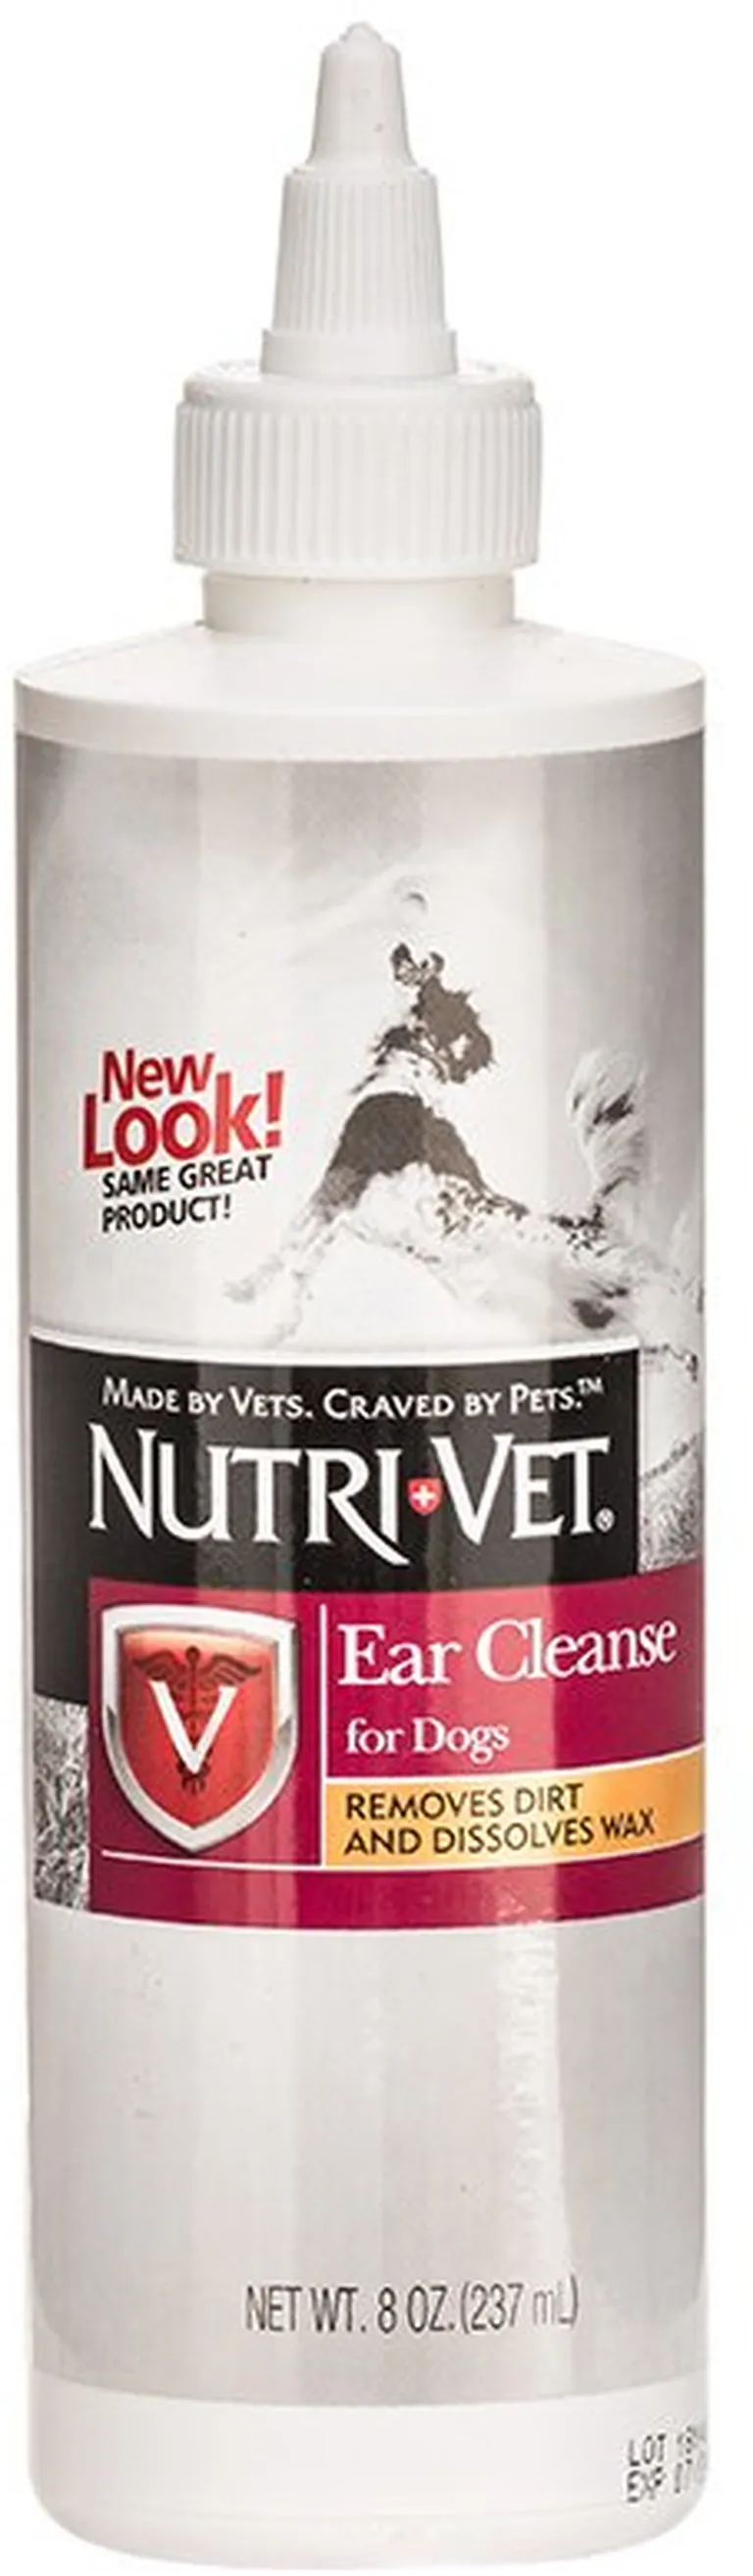 Nutri-Vet Ear Cleanse for Dogs Photo 2